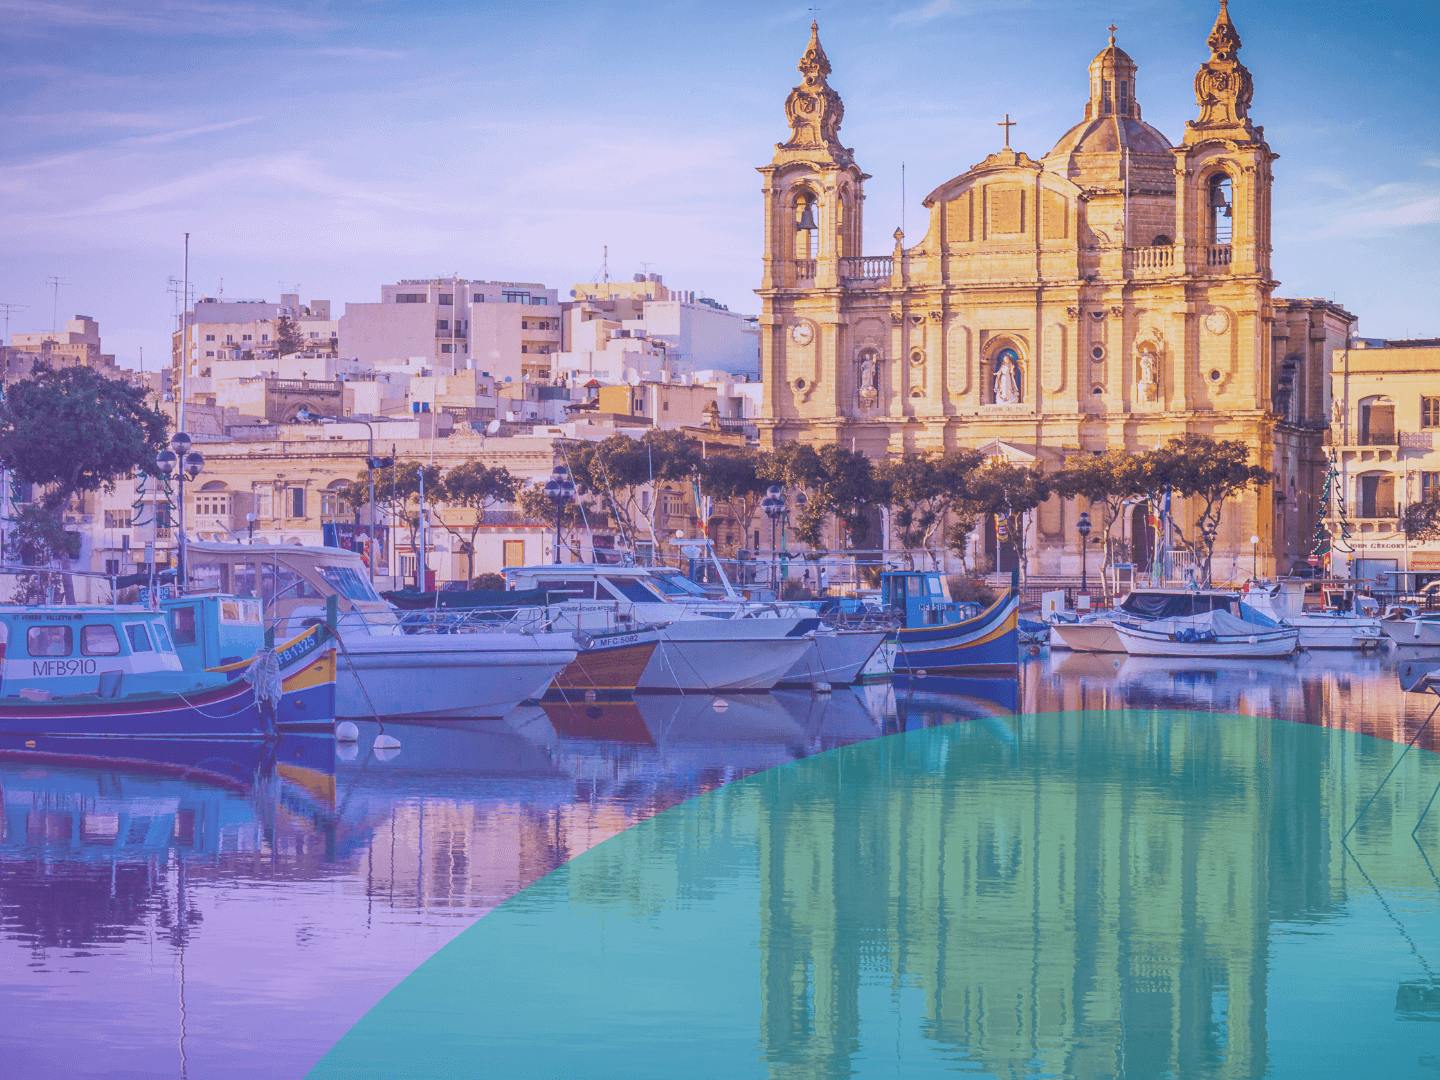 Yakınında tekneler bulunan Malta tarzı bir bina. Manzaranın deniz üzerinde yansıması görülmektedir.